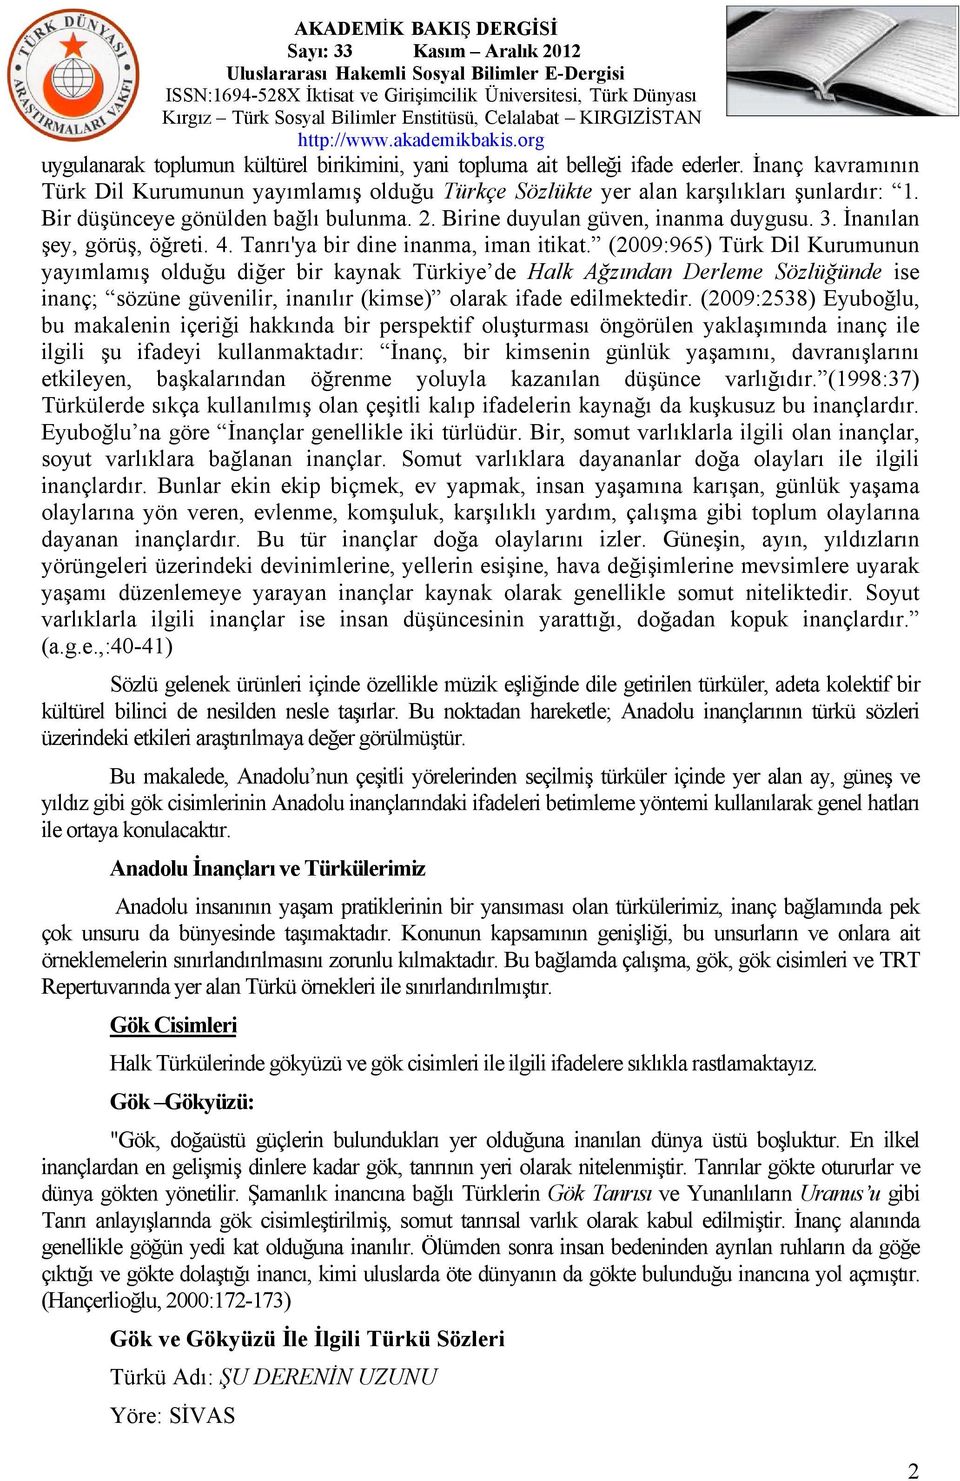 (2009:965) Türk Dil Kurumunun yayımlamış olduğu diğer bir kaynak Türkiye de Halk Ağzından Derleme Sözlüğünde ise inanç; sözüne güvenilir, inanılır (kimse) olarak ifade edilmektedir.